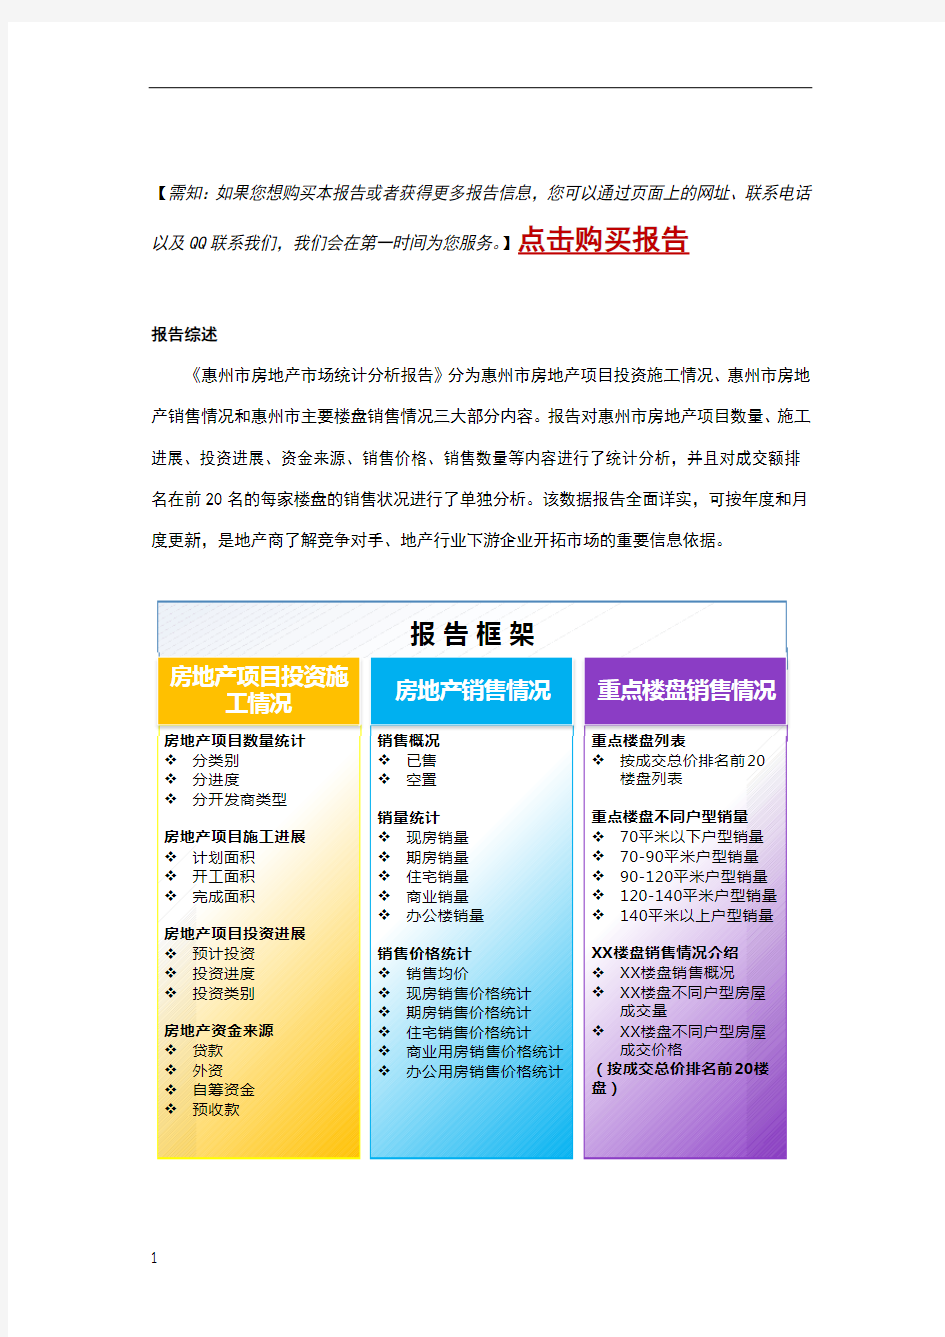 惠州市房地产市场统计分析报告